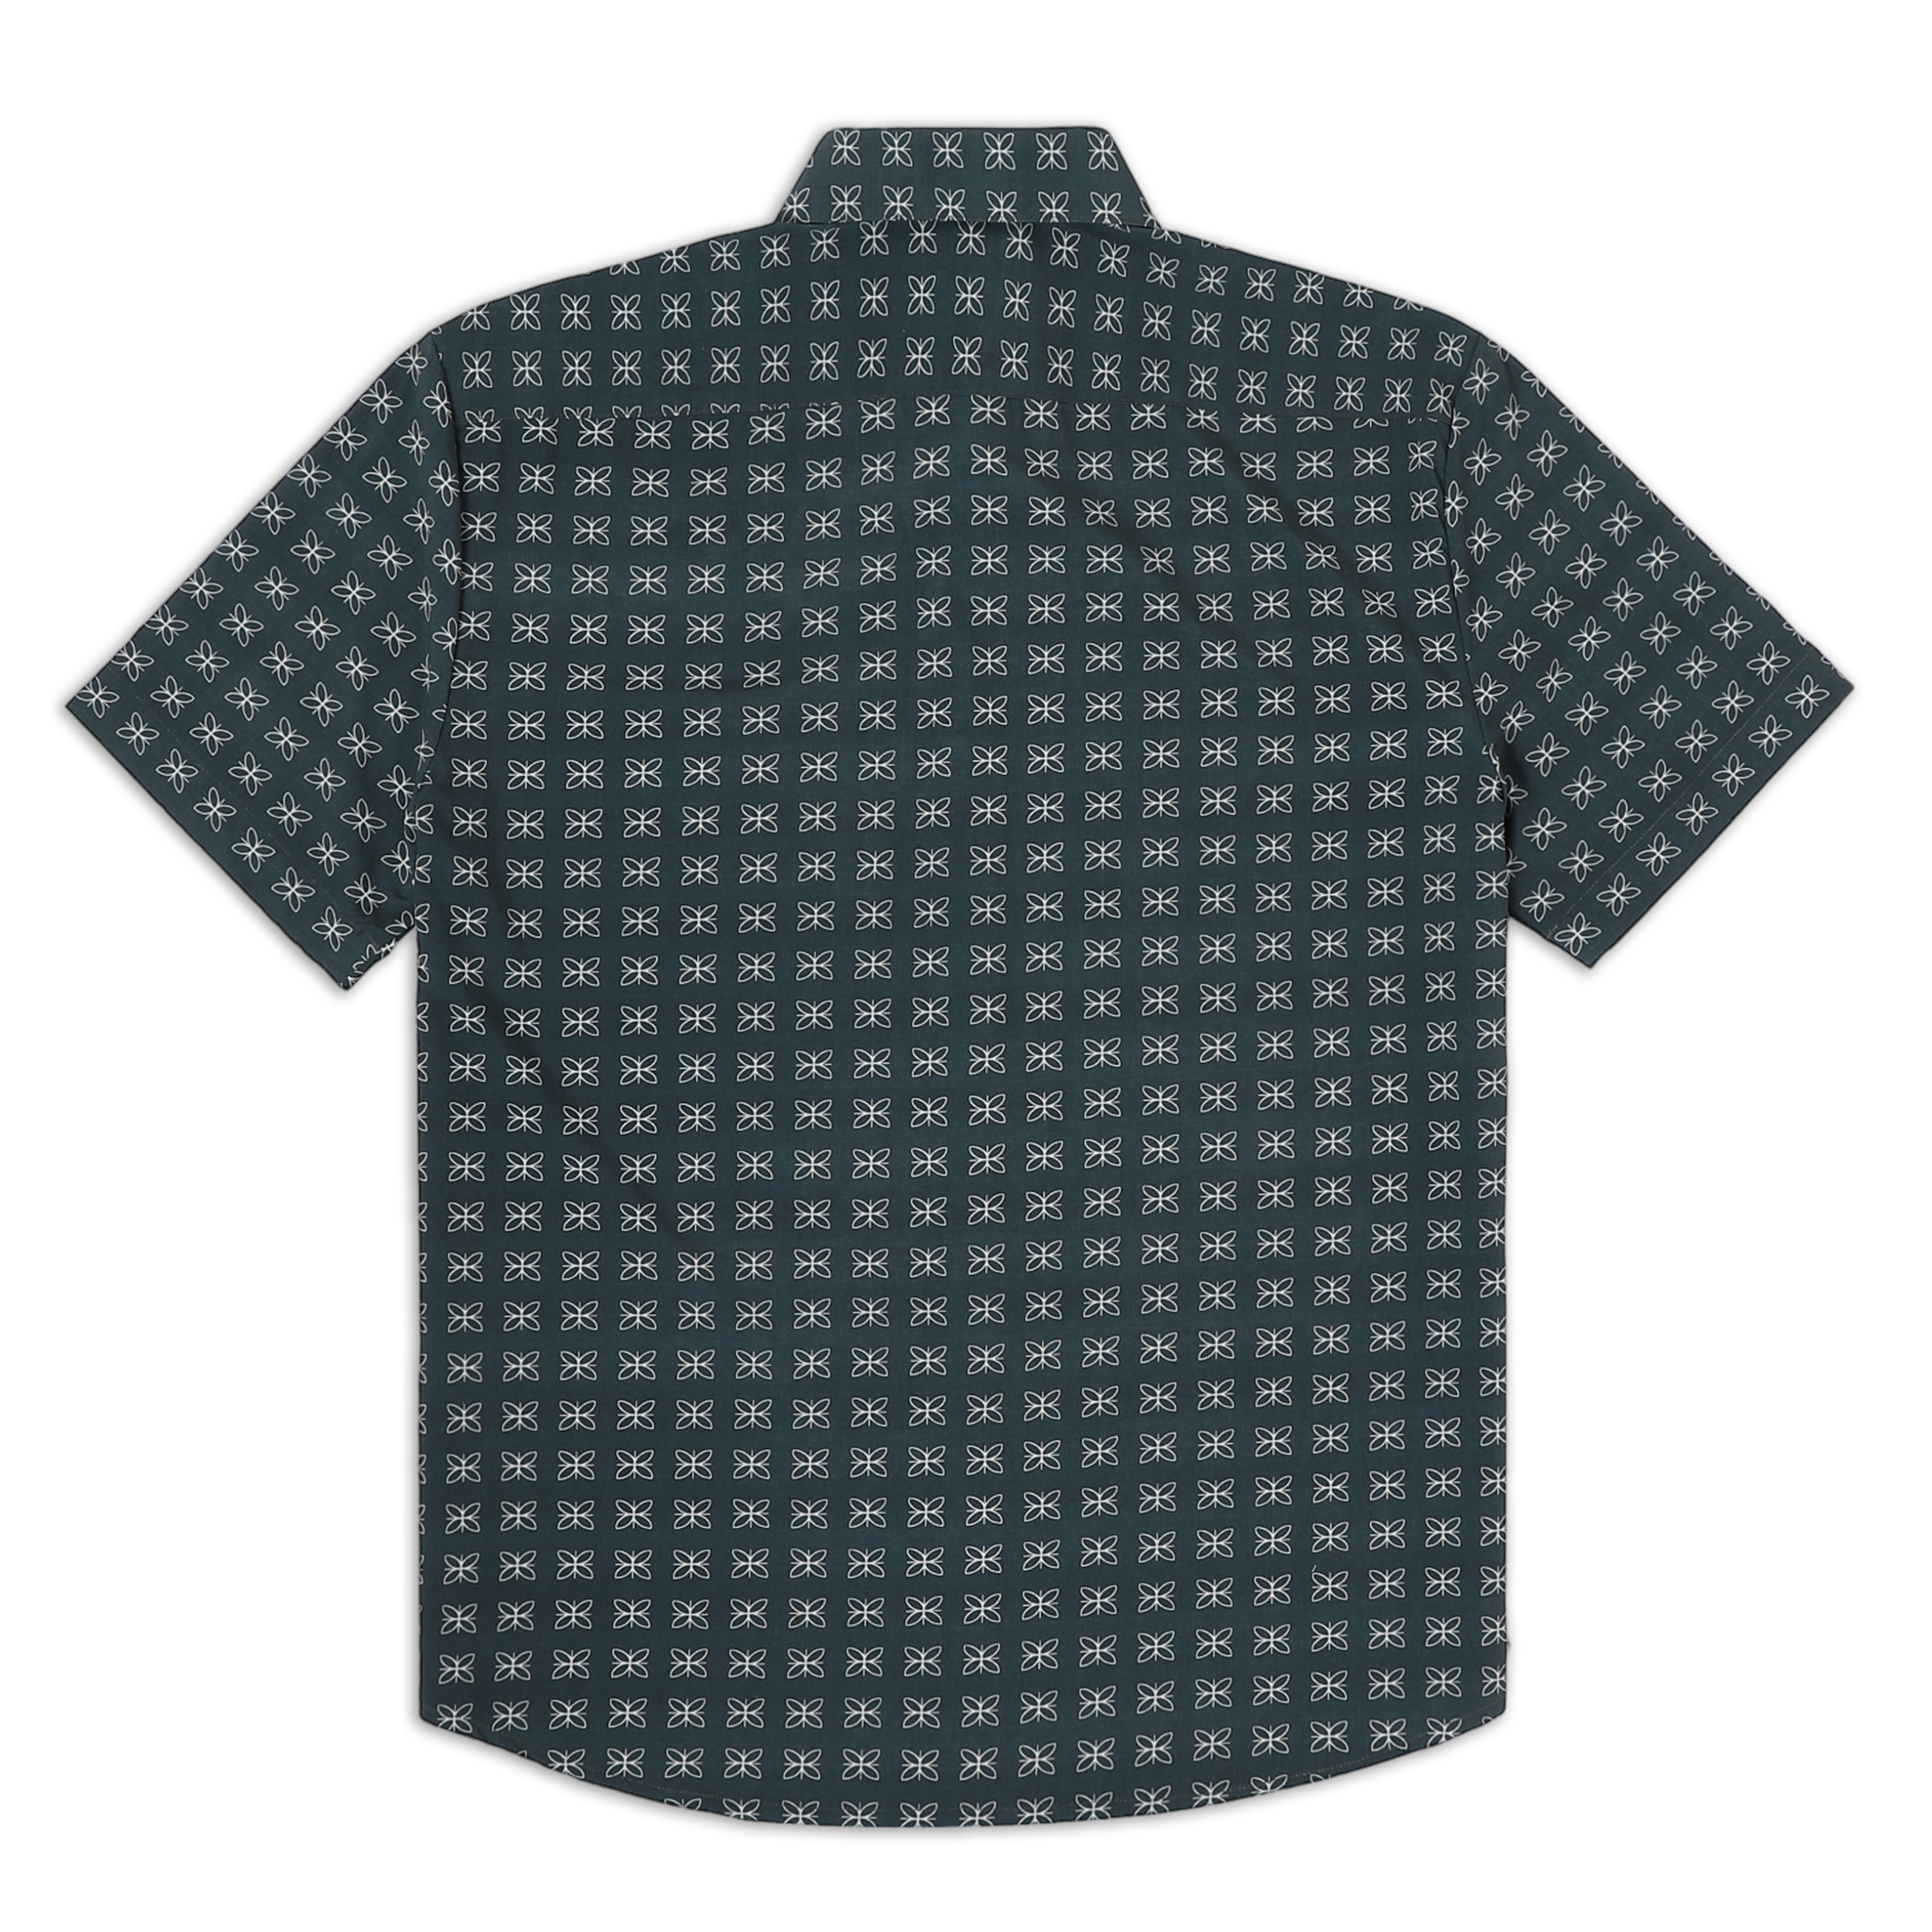 Cabana Shirt Mosaic back with short sleeves and collar